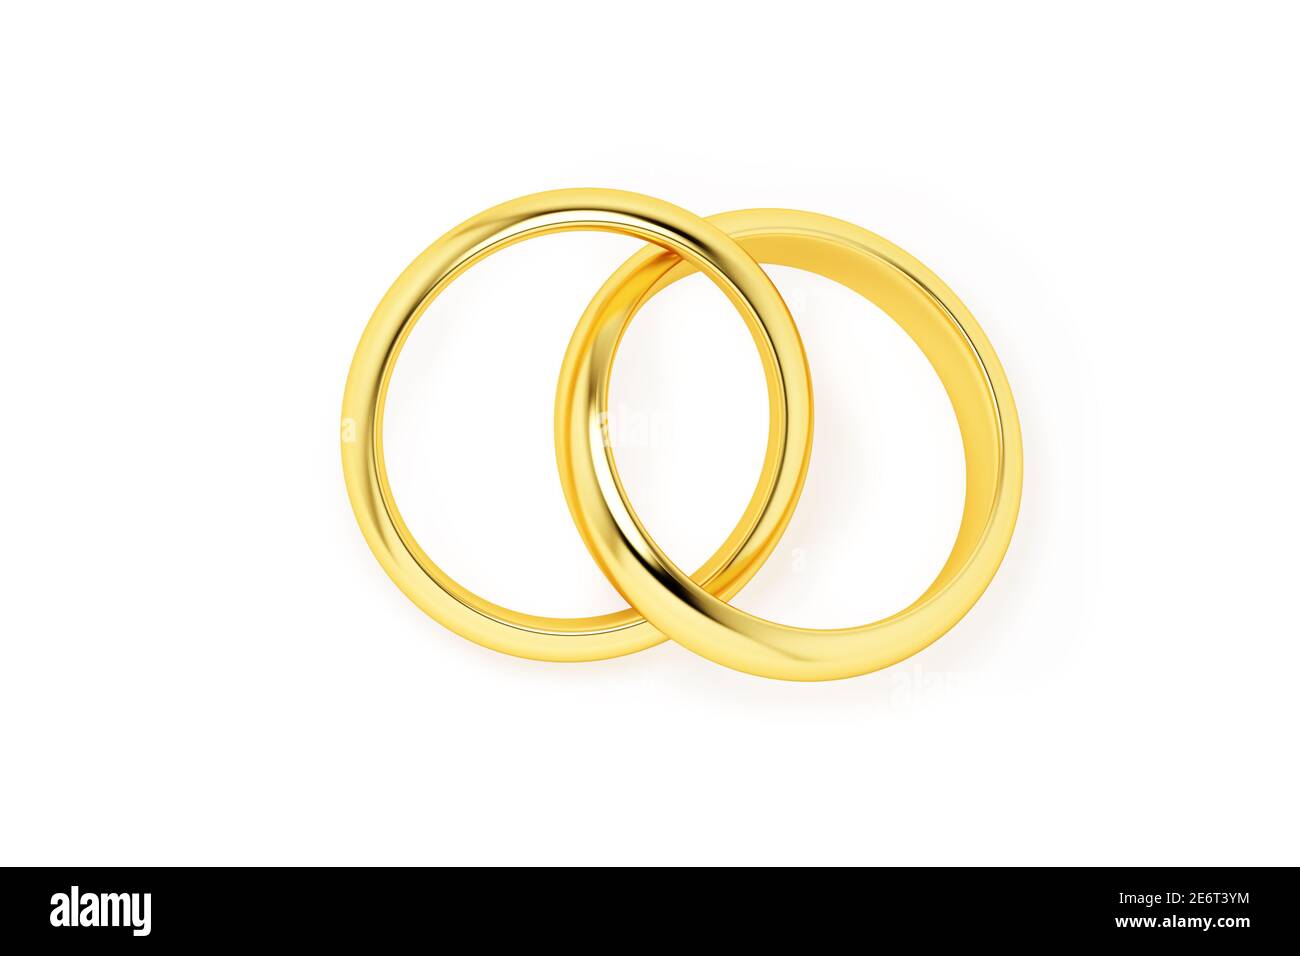 Deux anneaux de mariage dorés entrelacés isolés sur un fond blanc. Banque D'Images